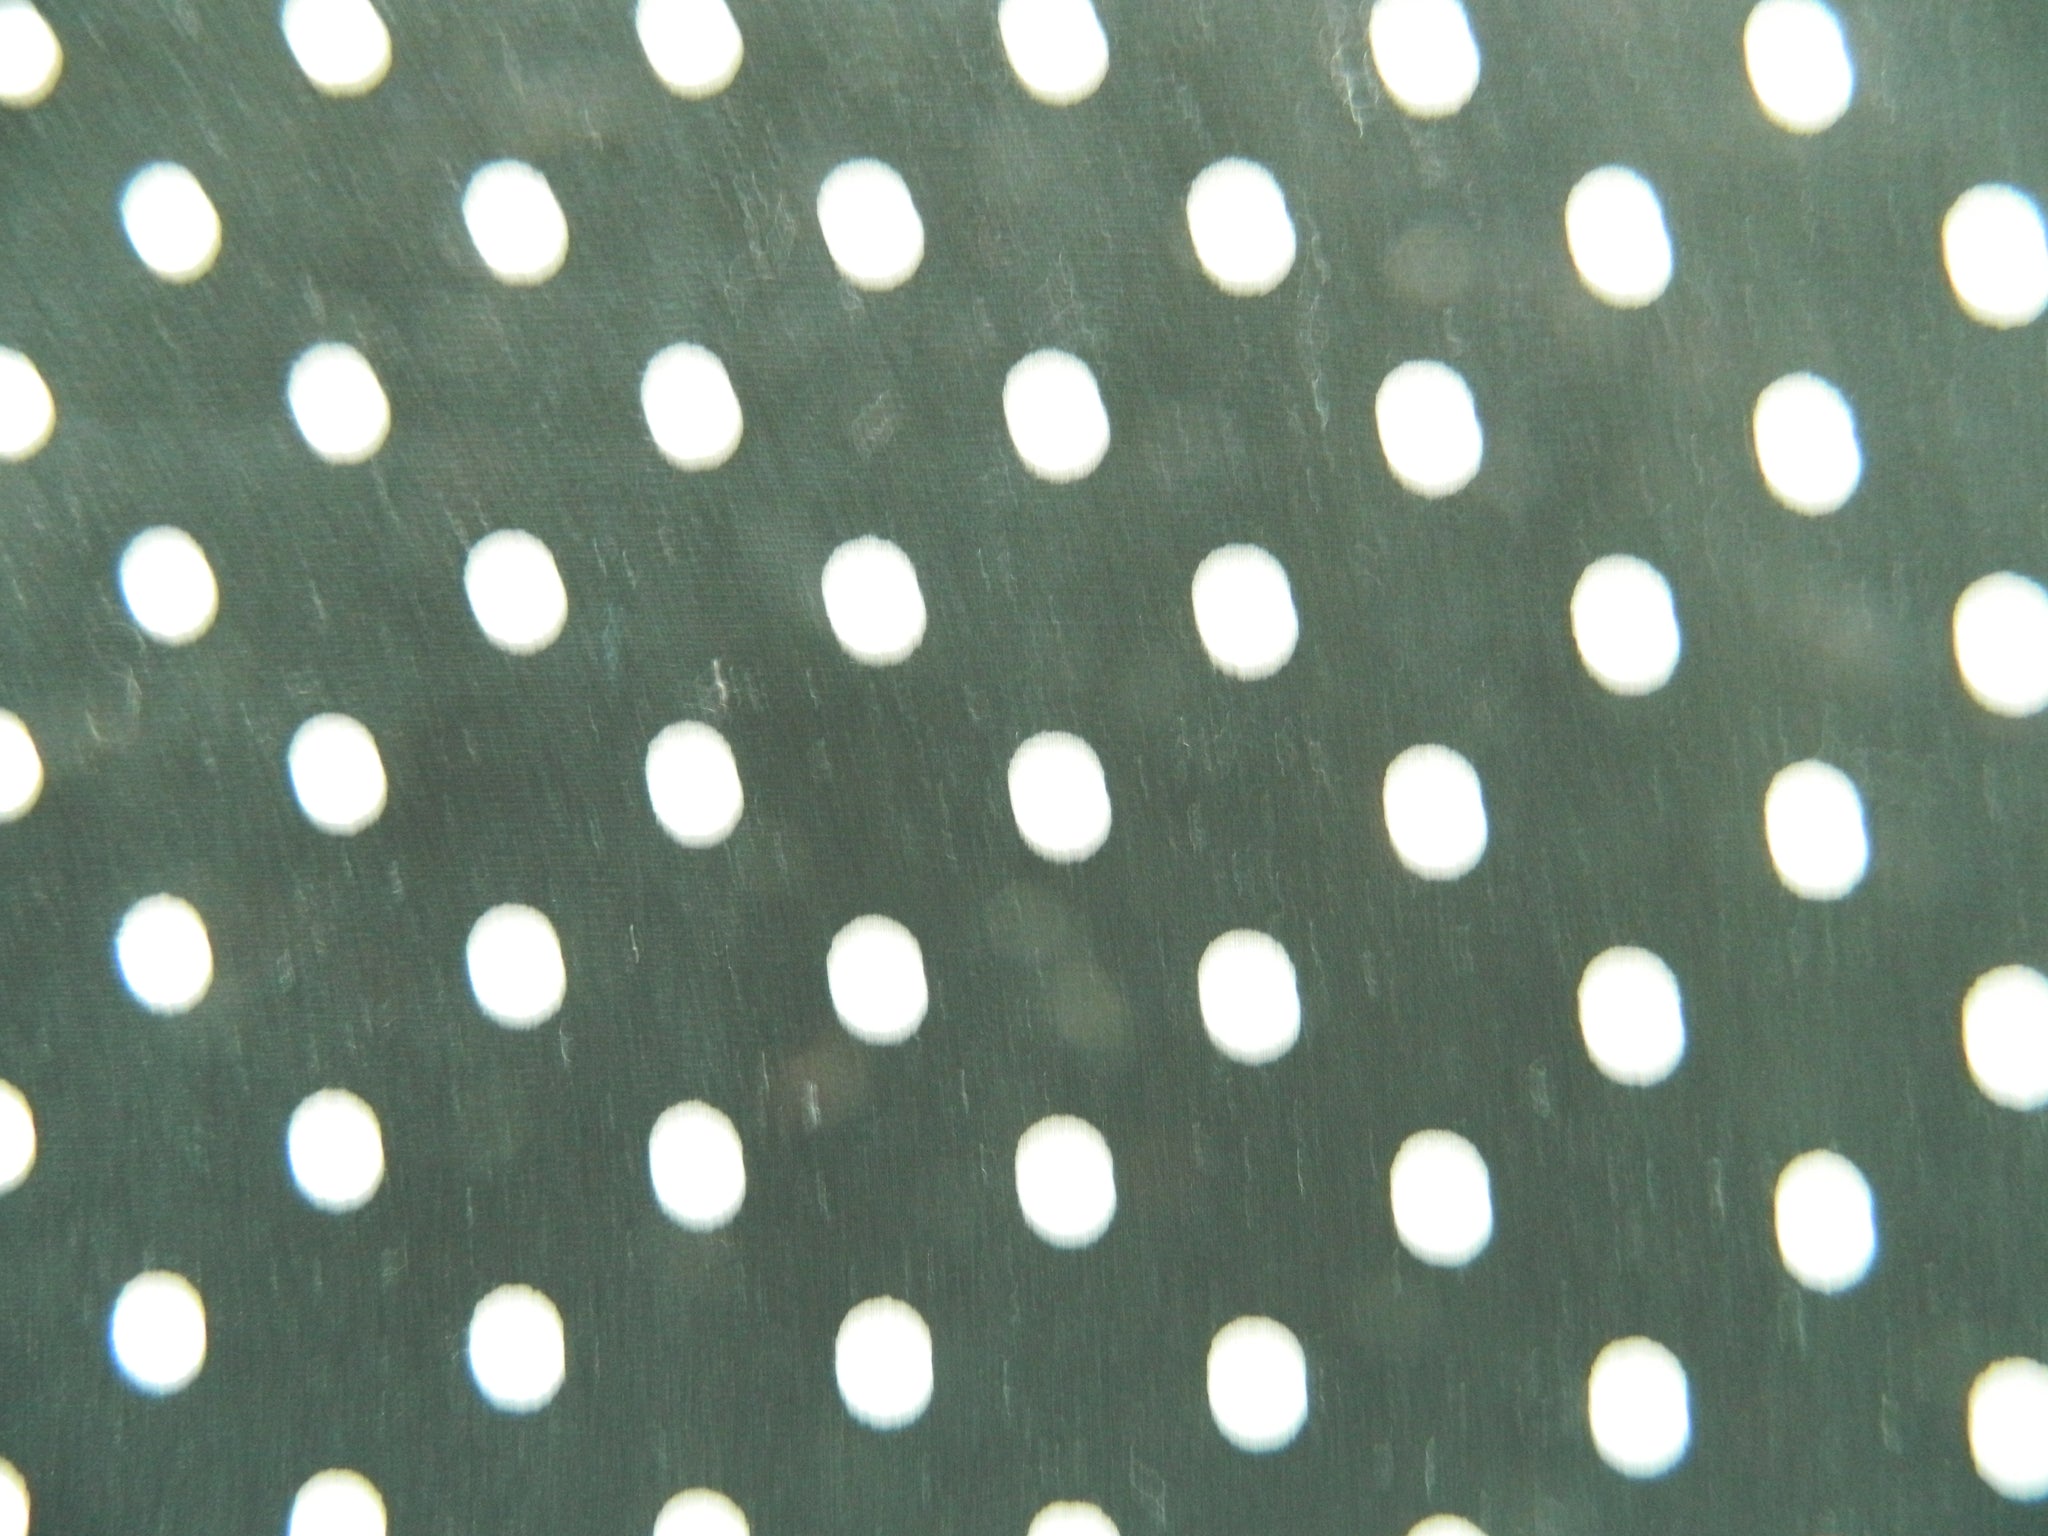 Spots & Dots   Black & White  88190 7-13